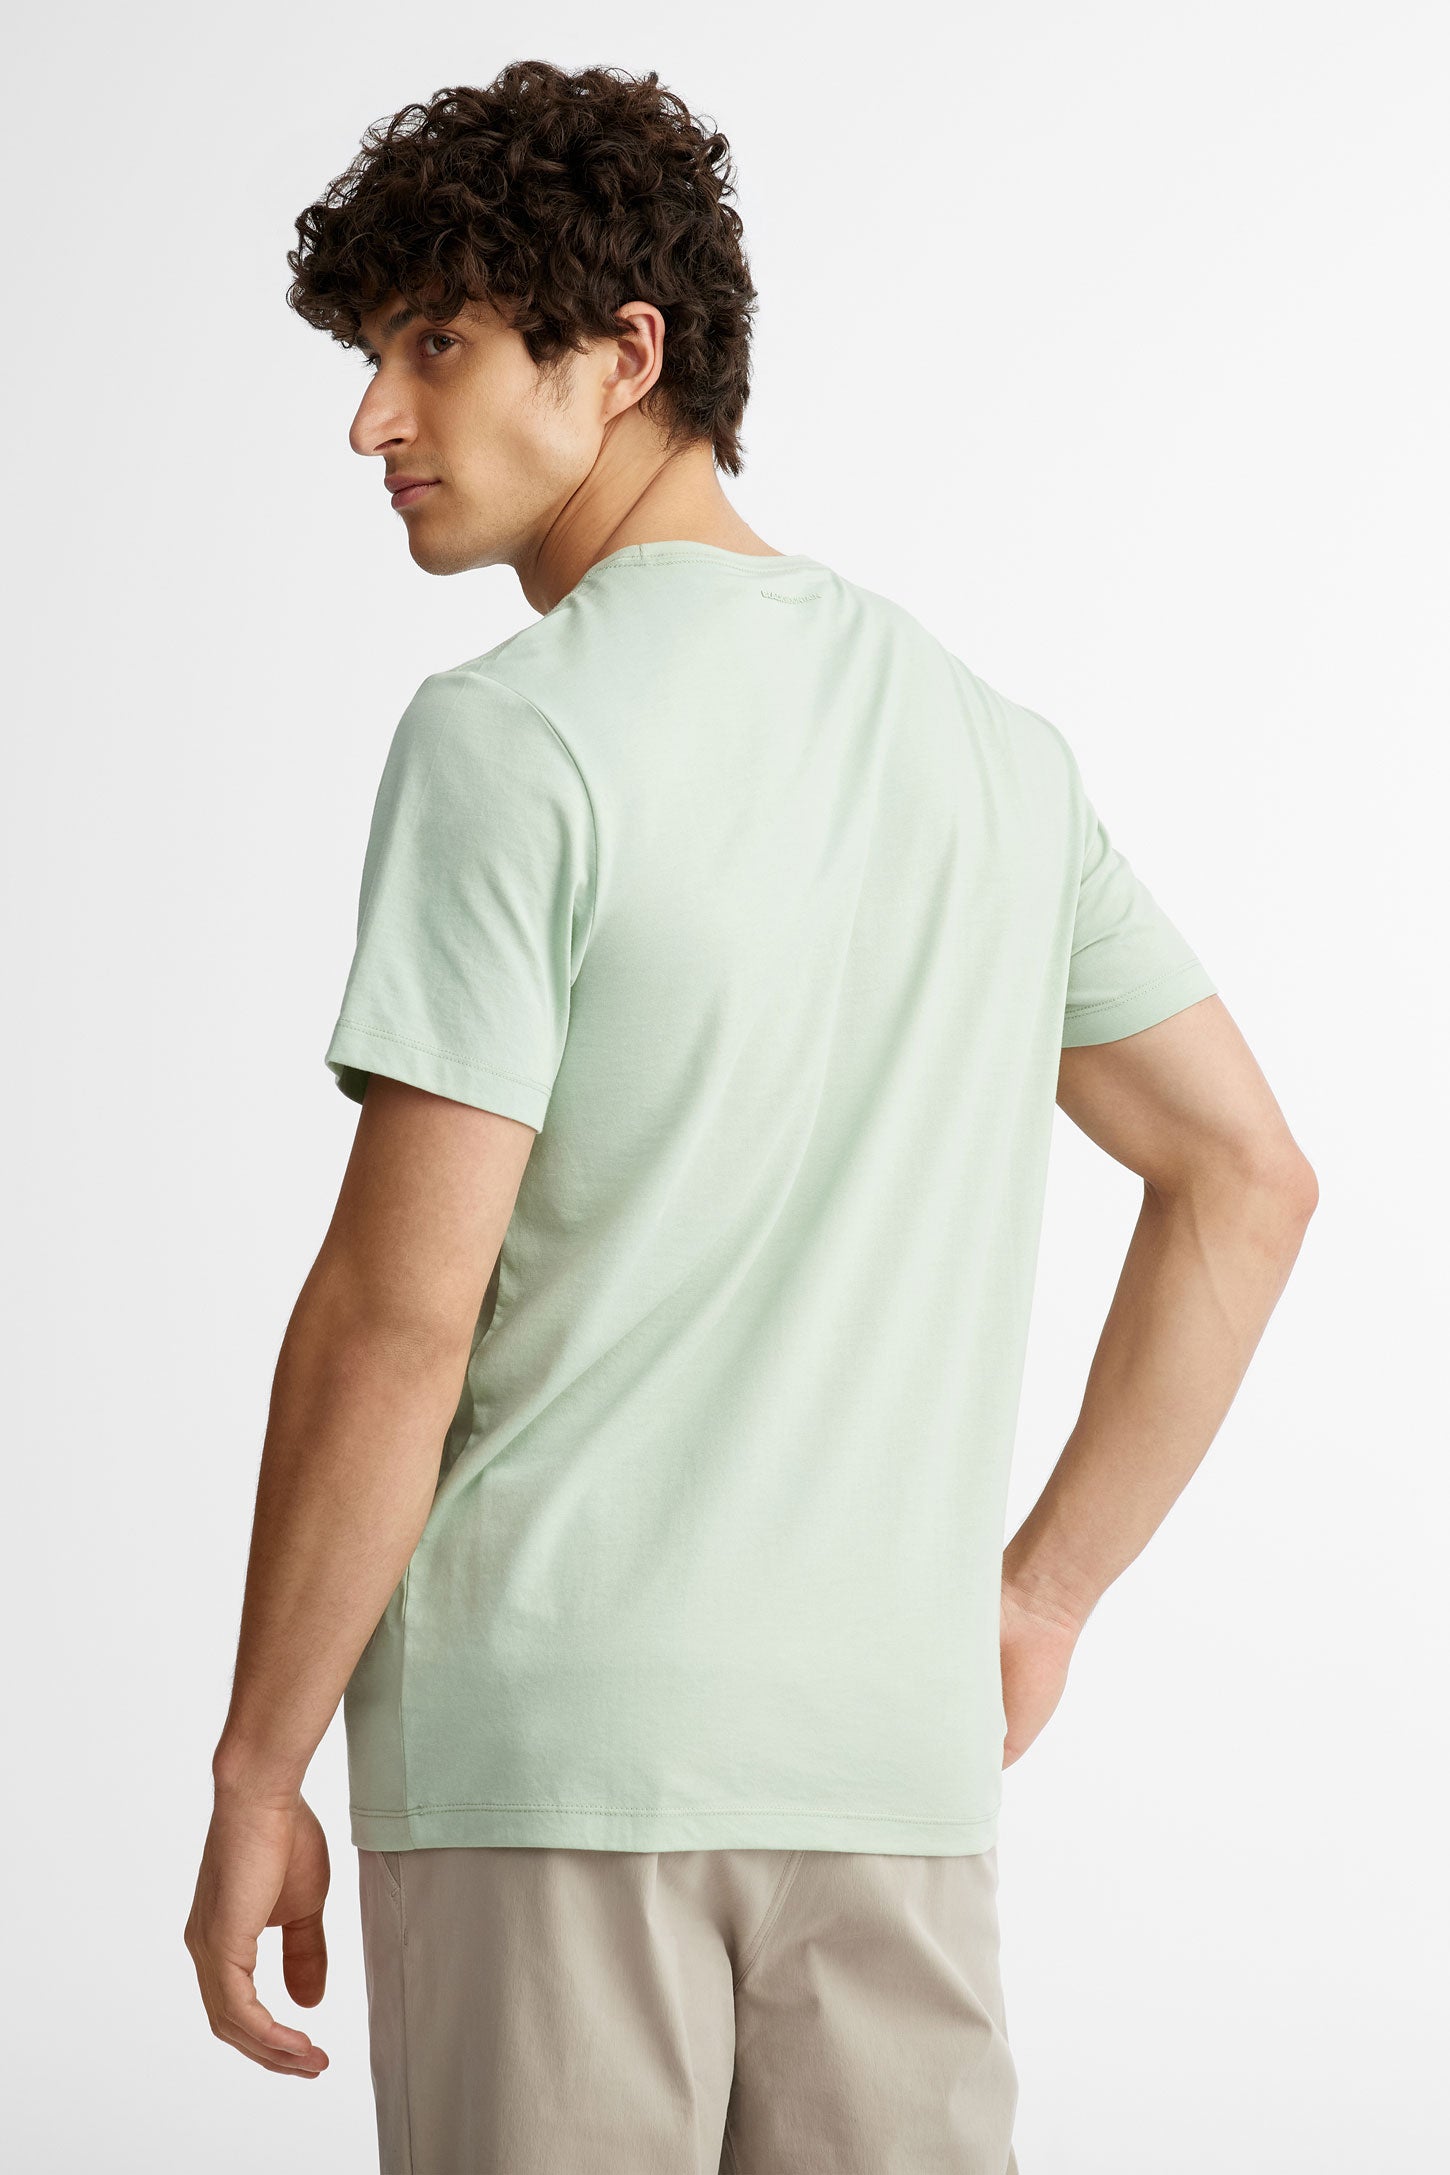 T-shirt col rond coton bio BM, 2/50$ - Homme && MENTHE